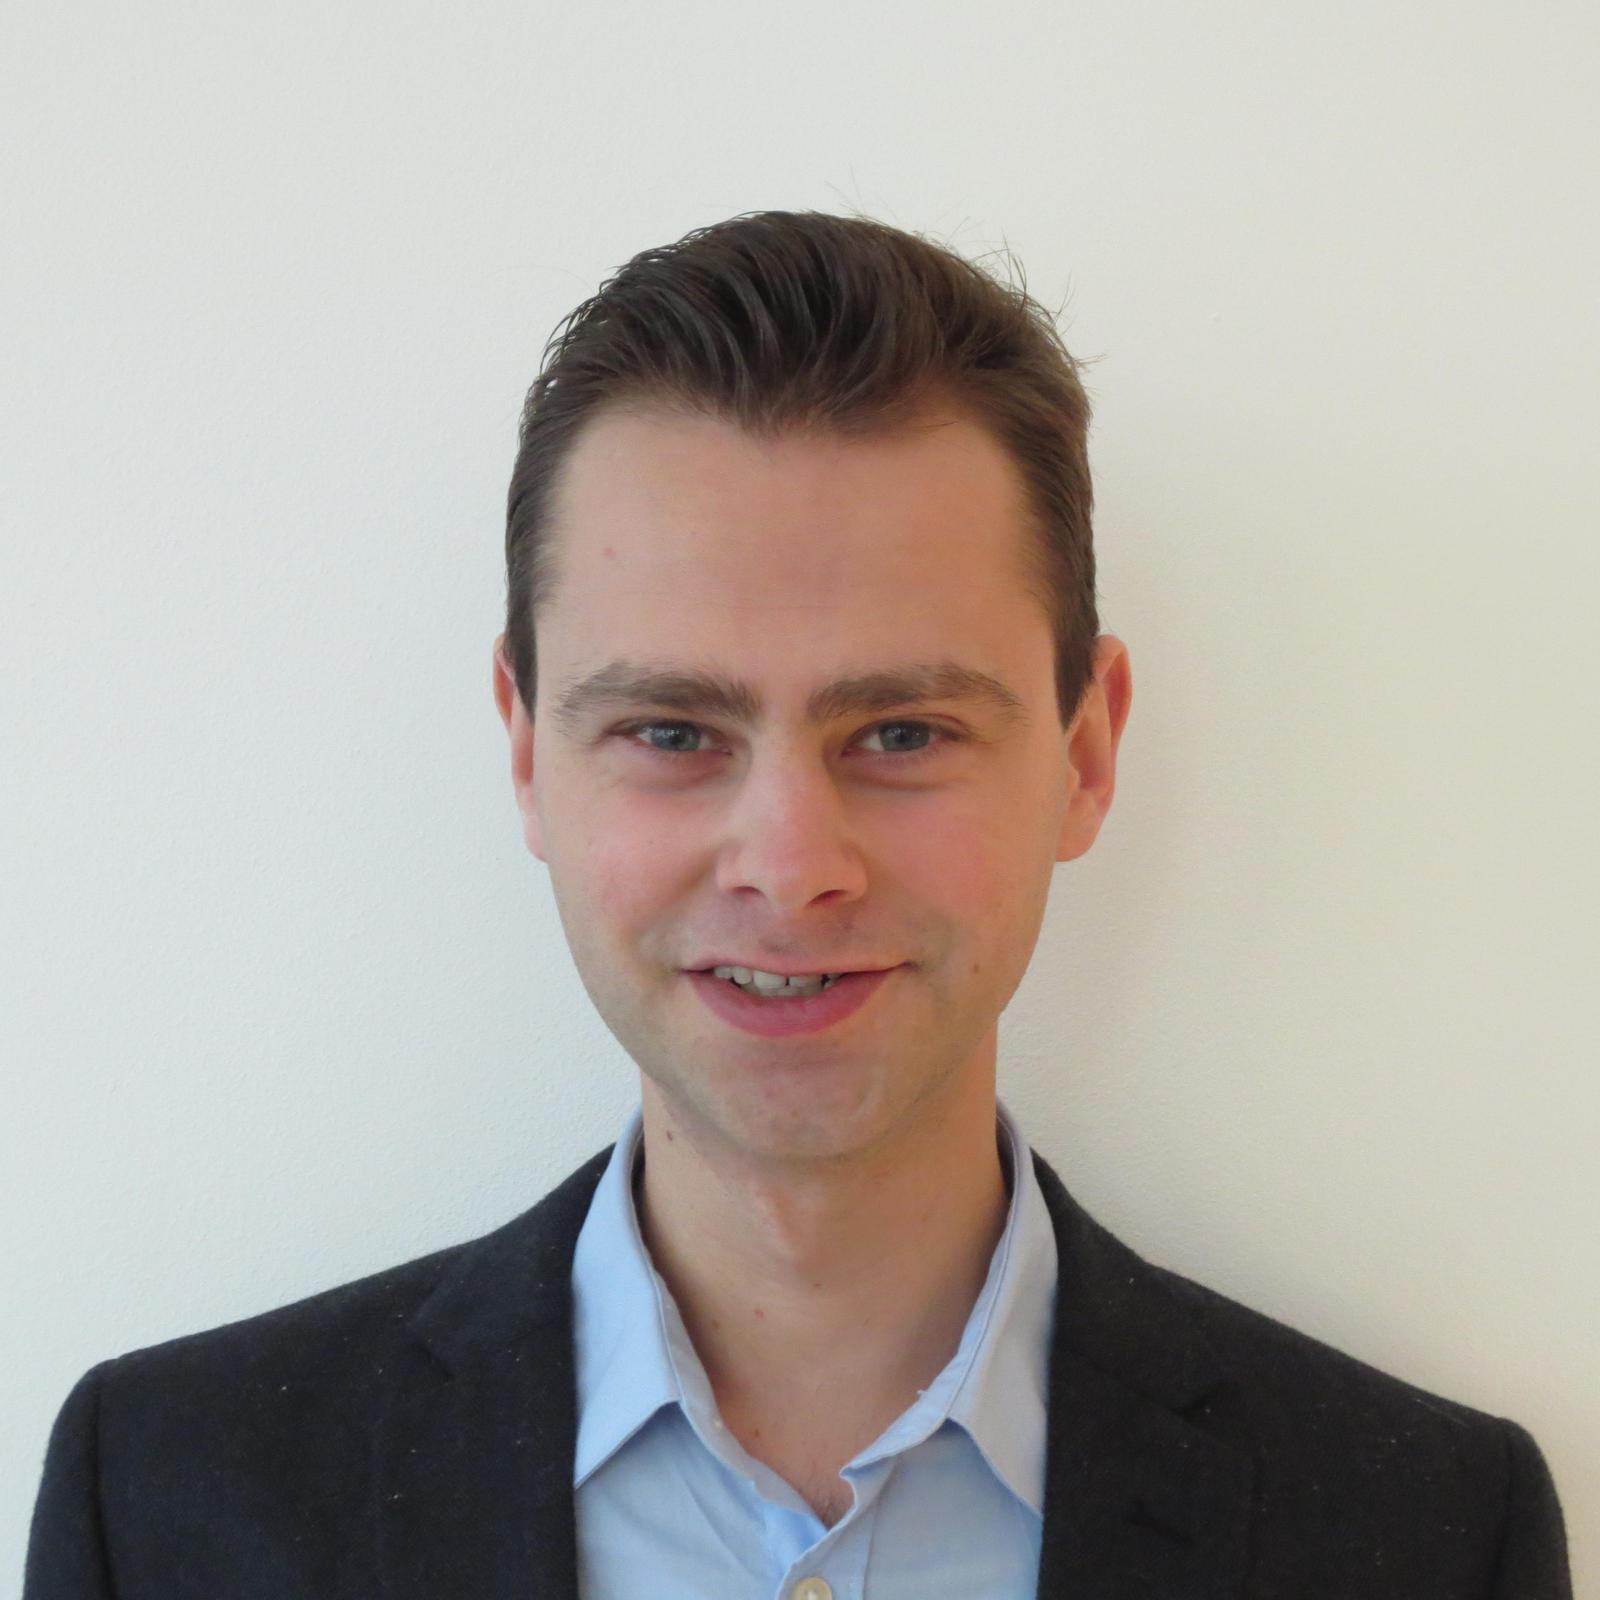 Marc den Ouden - Winstadviseur & Belastingadviseur in Eindhoven